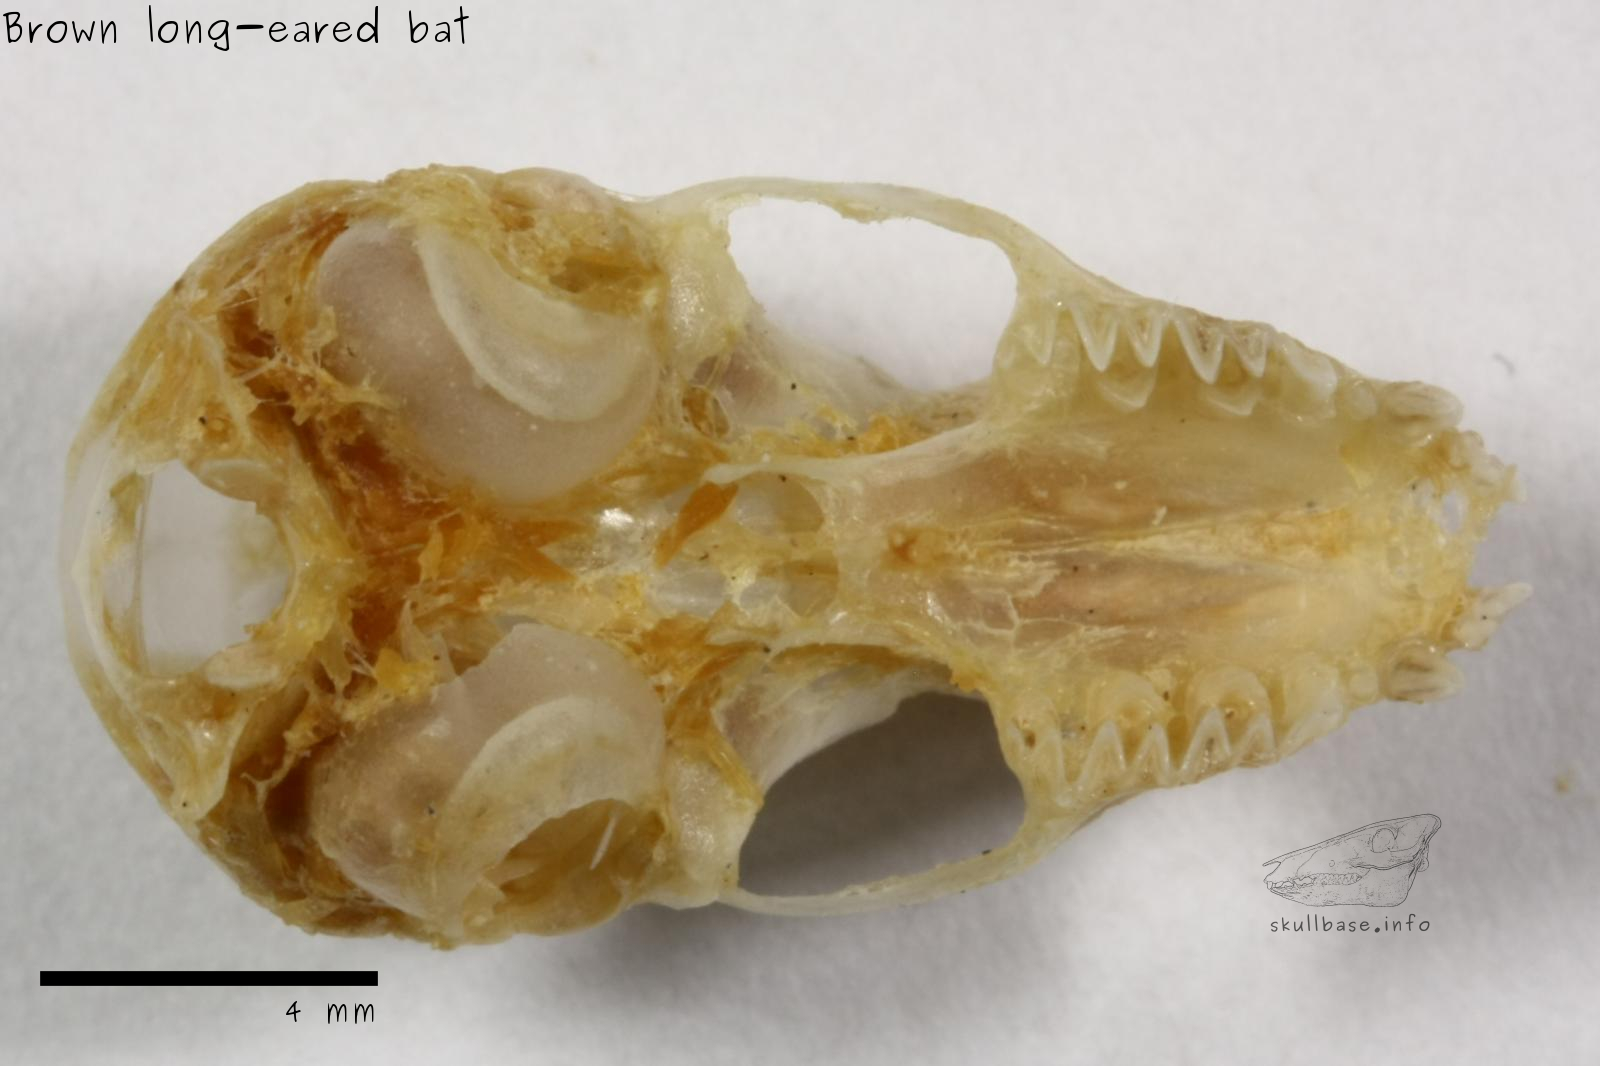 Brown long-eared bat (Plecotus auritus) skull ventral view